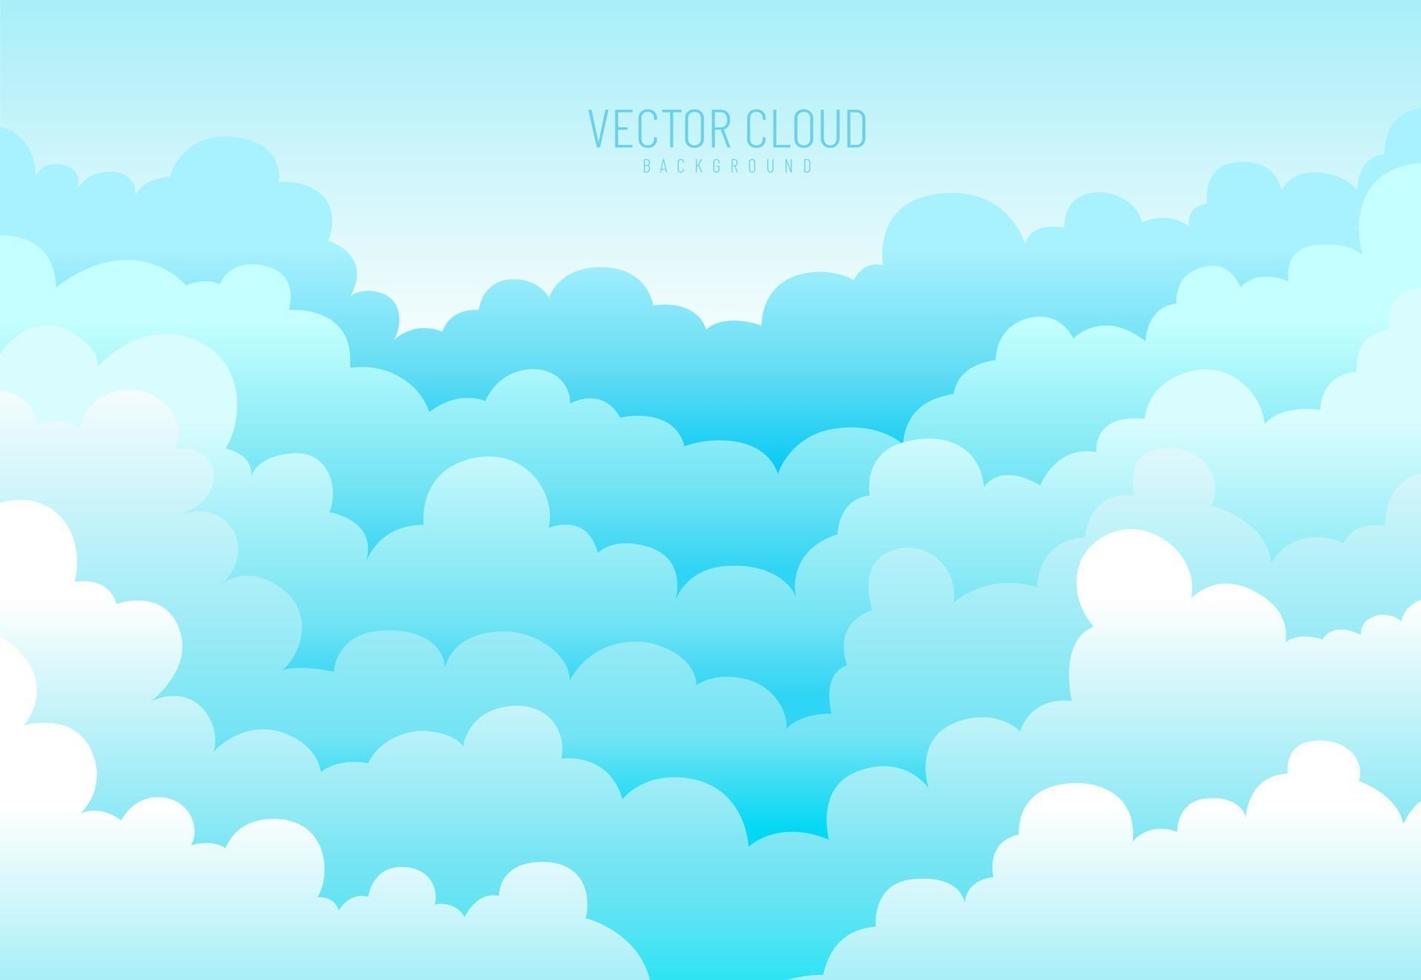 céu azul suave abstrato com fundo de nuvens brancas no estilo de corte de papel. fronteira de nuvens. design simples dos desenhos animados. ilustração em vetor estilo simples.